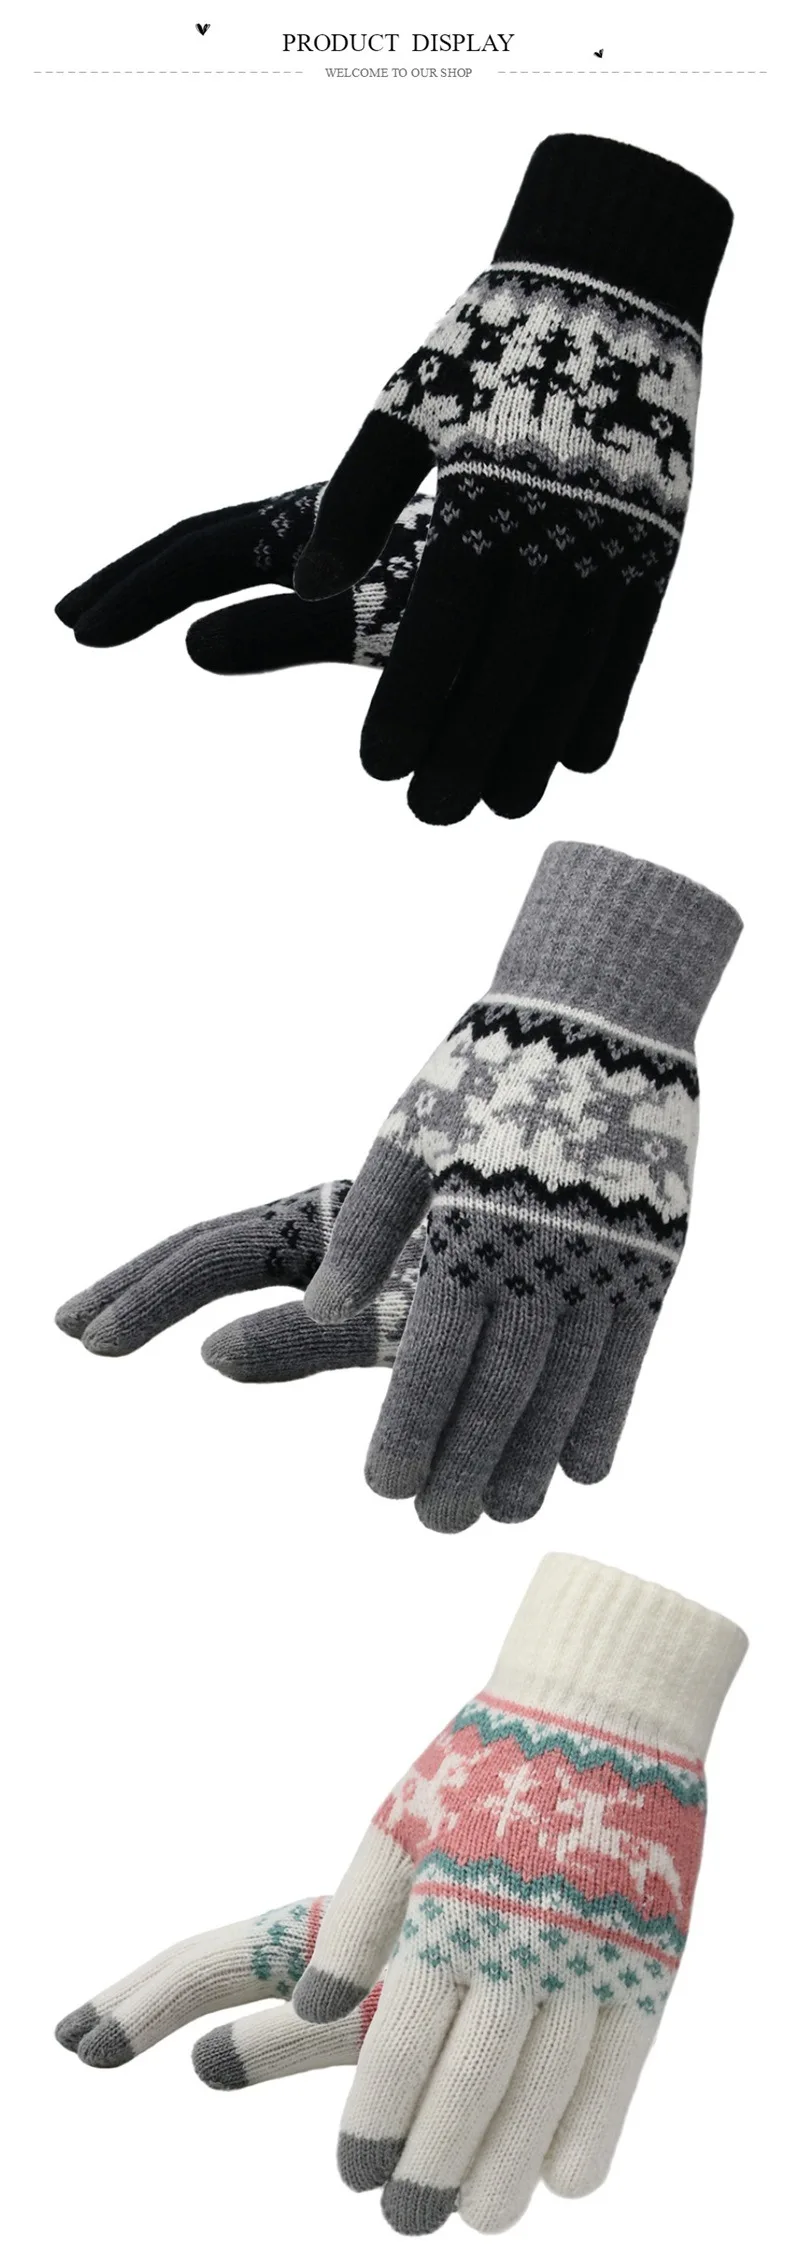 Новые модные вязаные перчатки Рождественские лося осень зима женские теплые ласки жаккардовые противоскользящие кран экран женские рождественские подарки